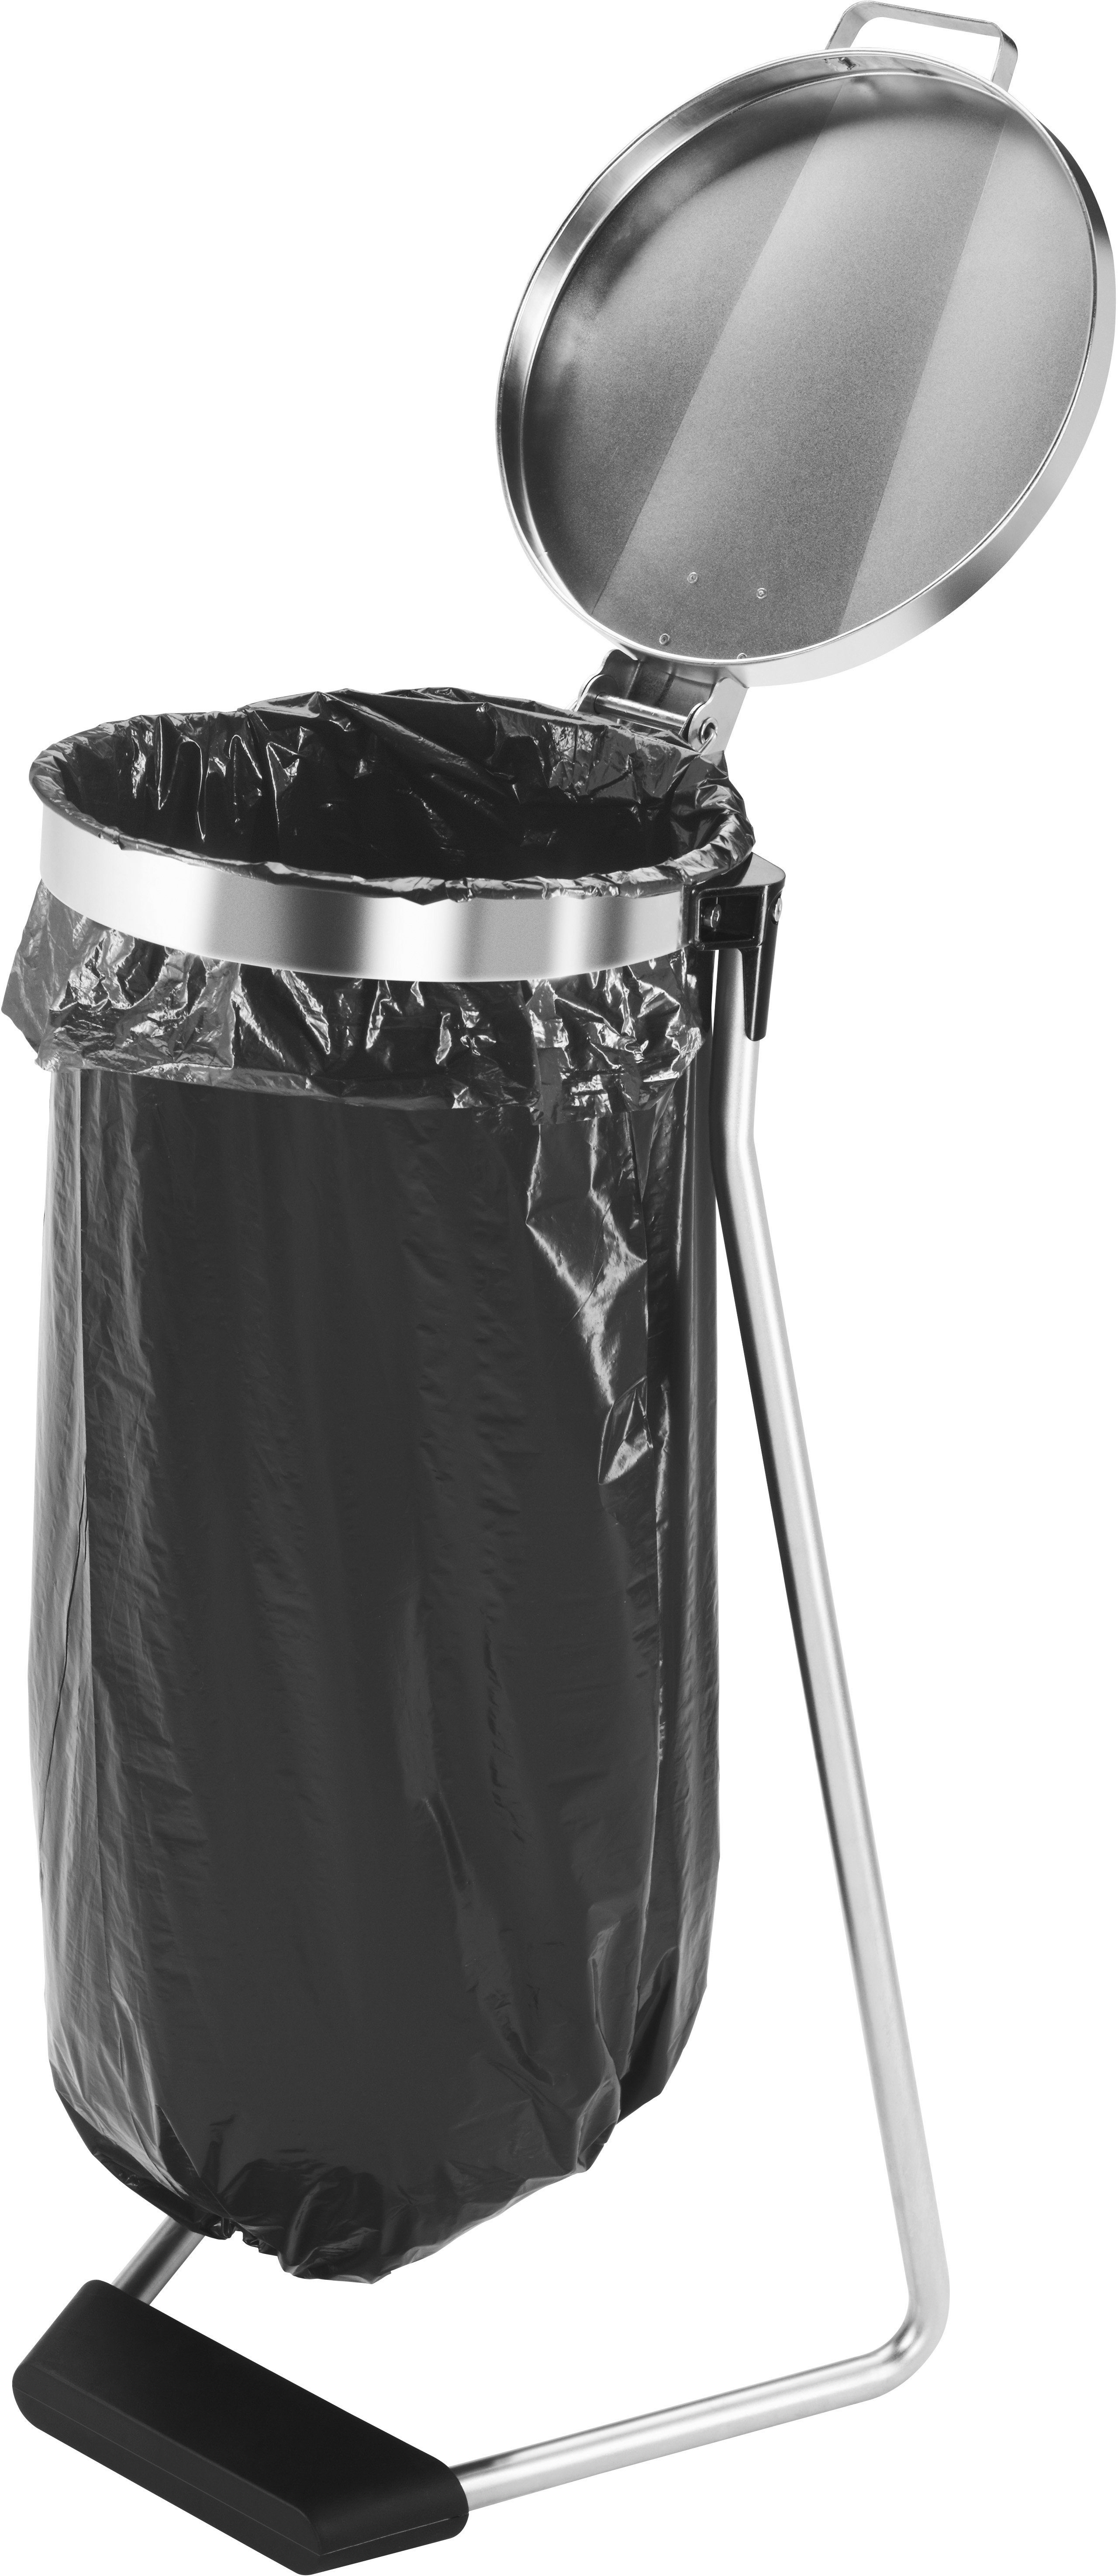 Hailo Müllsackständer ProfiLine grau, XXXL, Müllbeutelfixierung 120 Liter, MSS Design